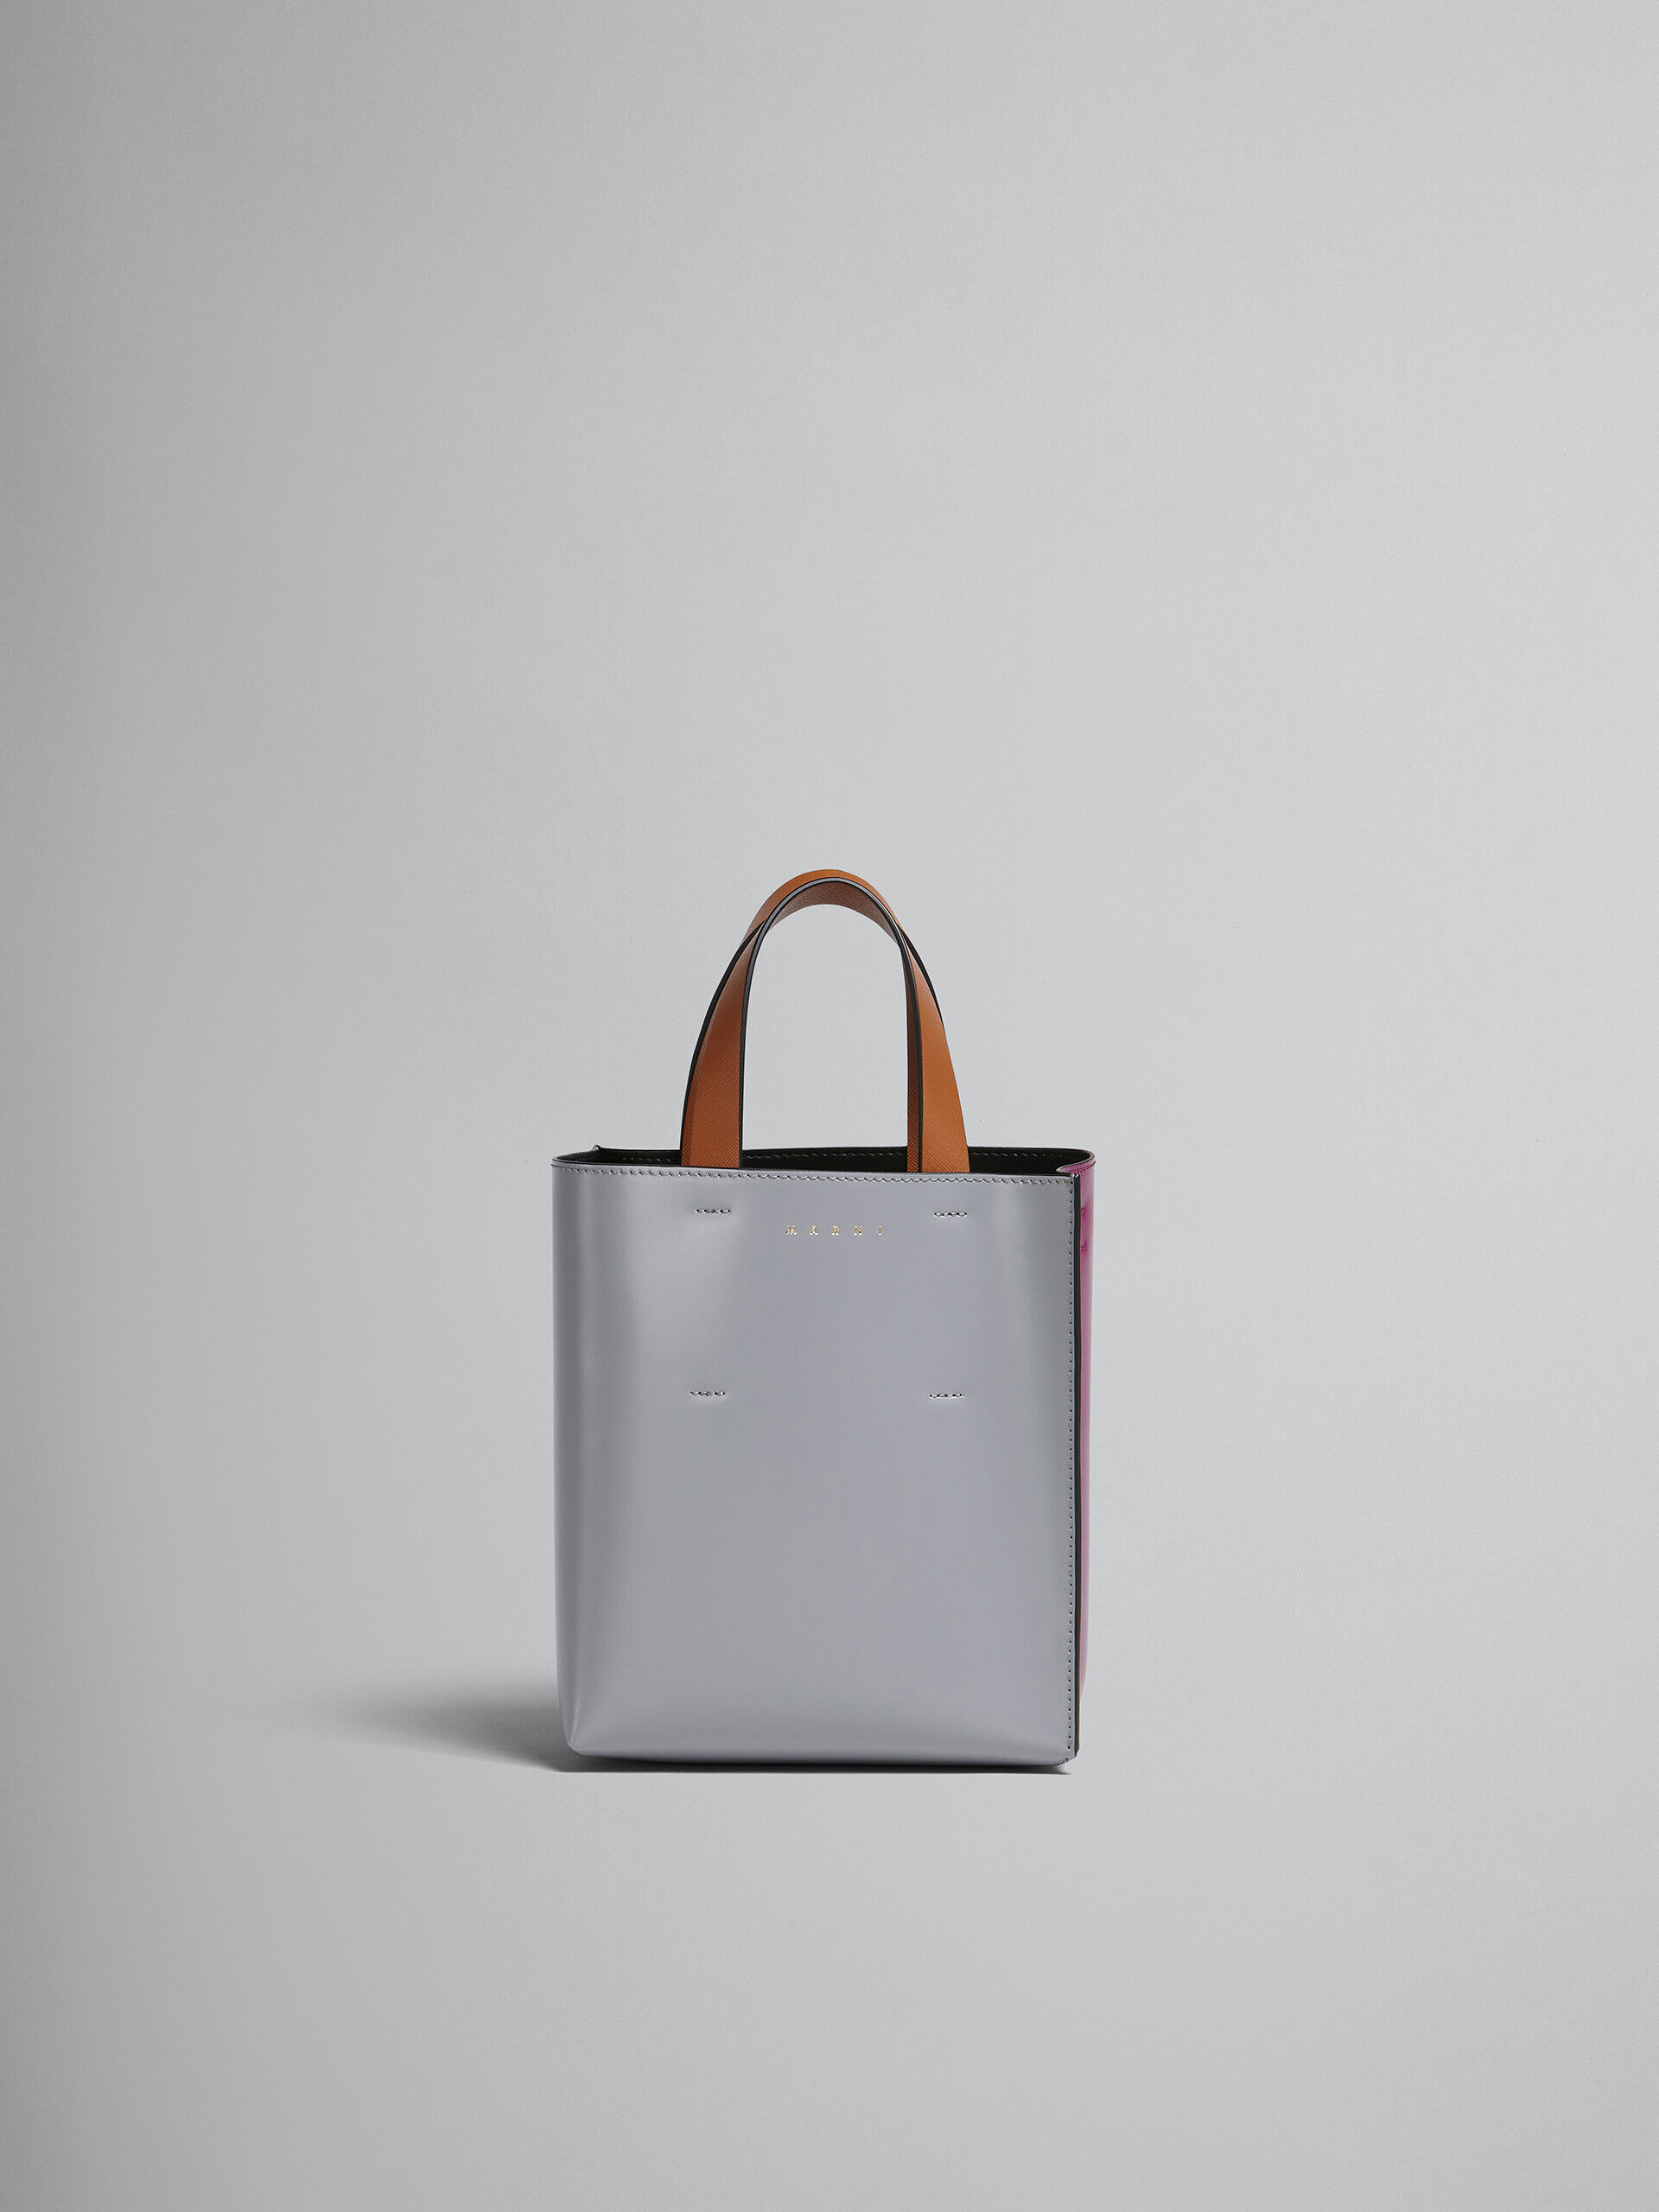 MUSEO mini bag in grey and purple leather | Marni